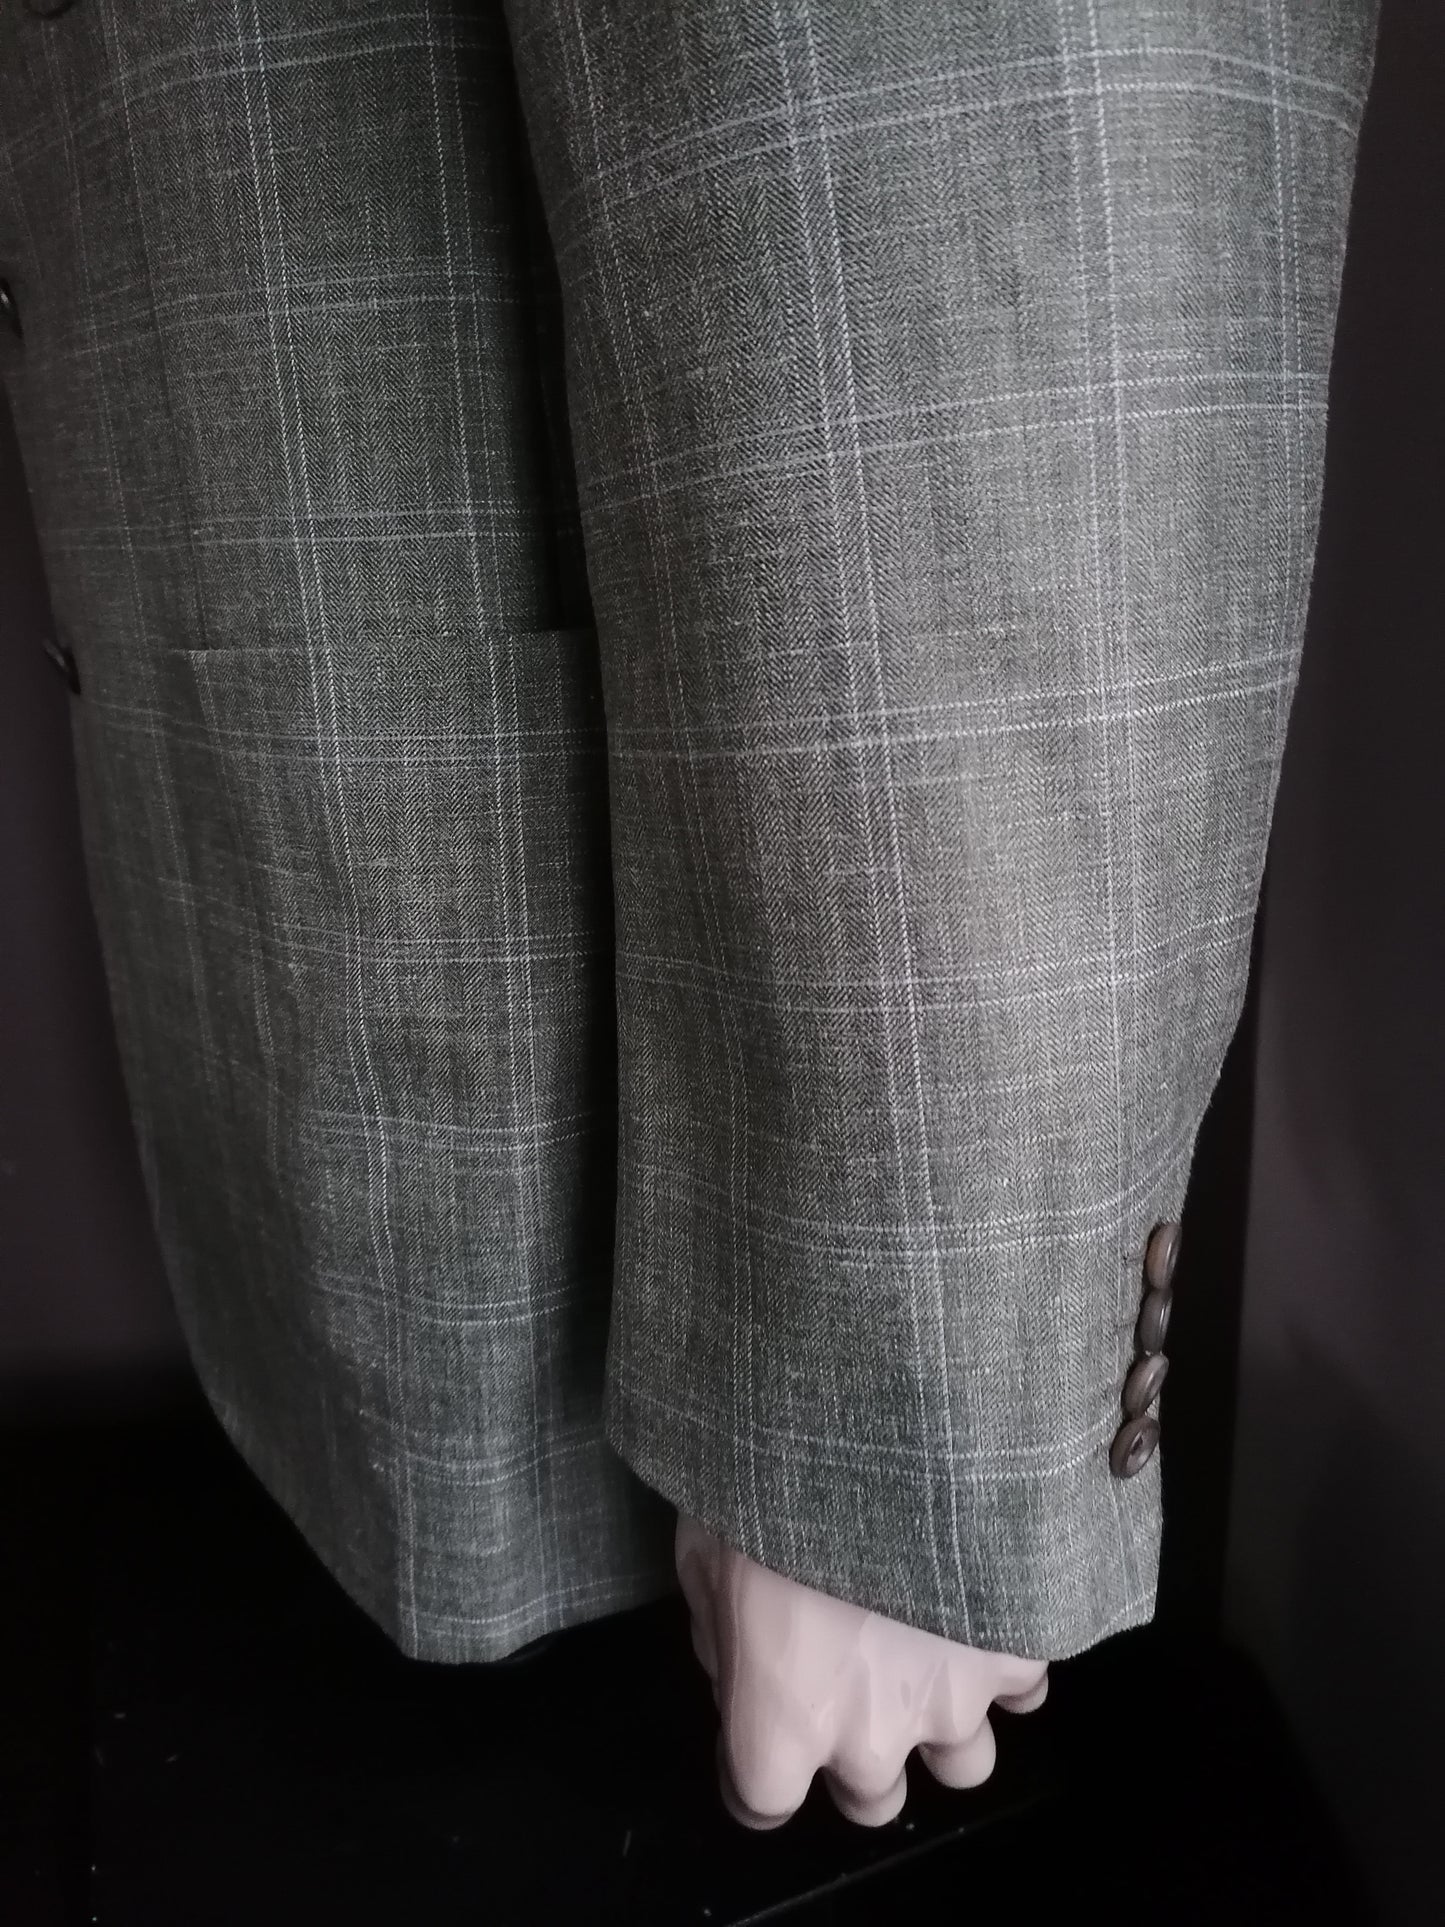 Veste en laine et en lin Franck Namani. Green White Checkered. Taille 56 / XL